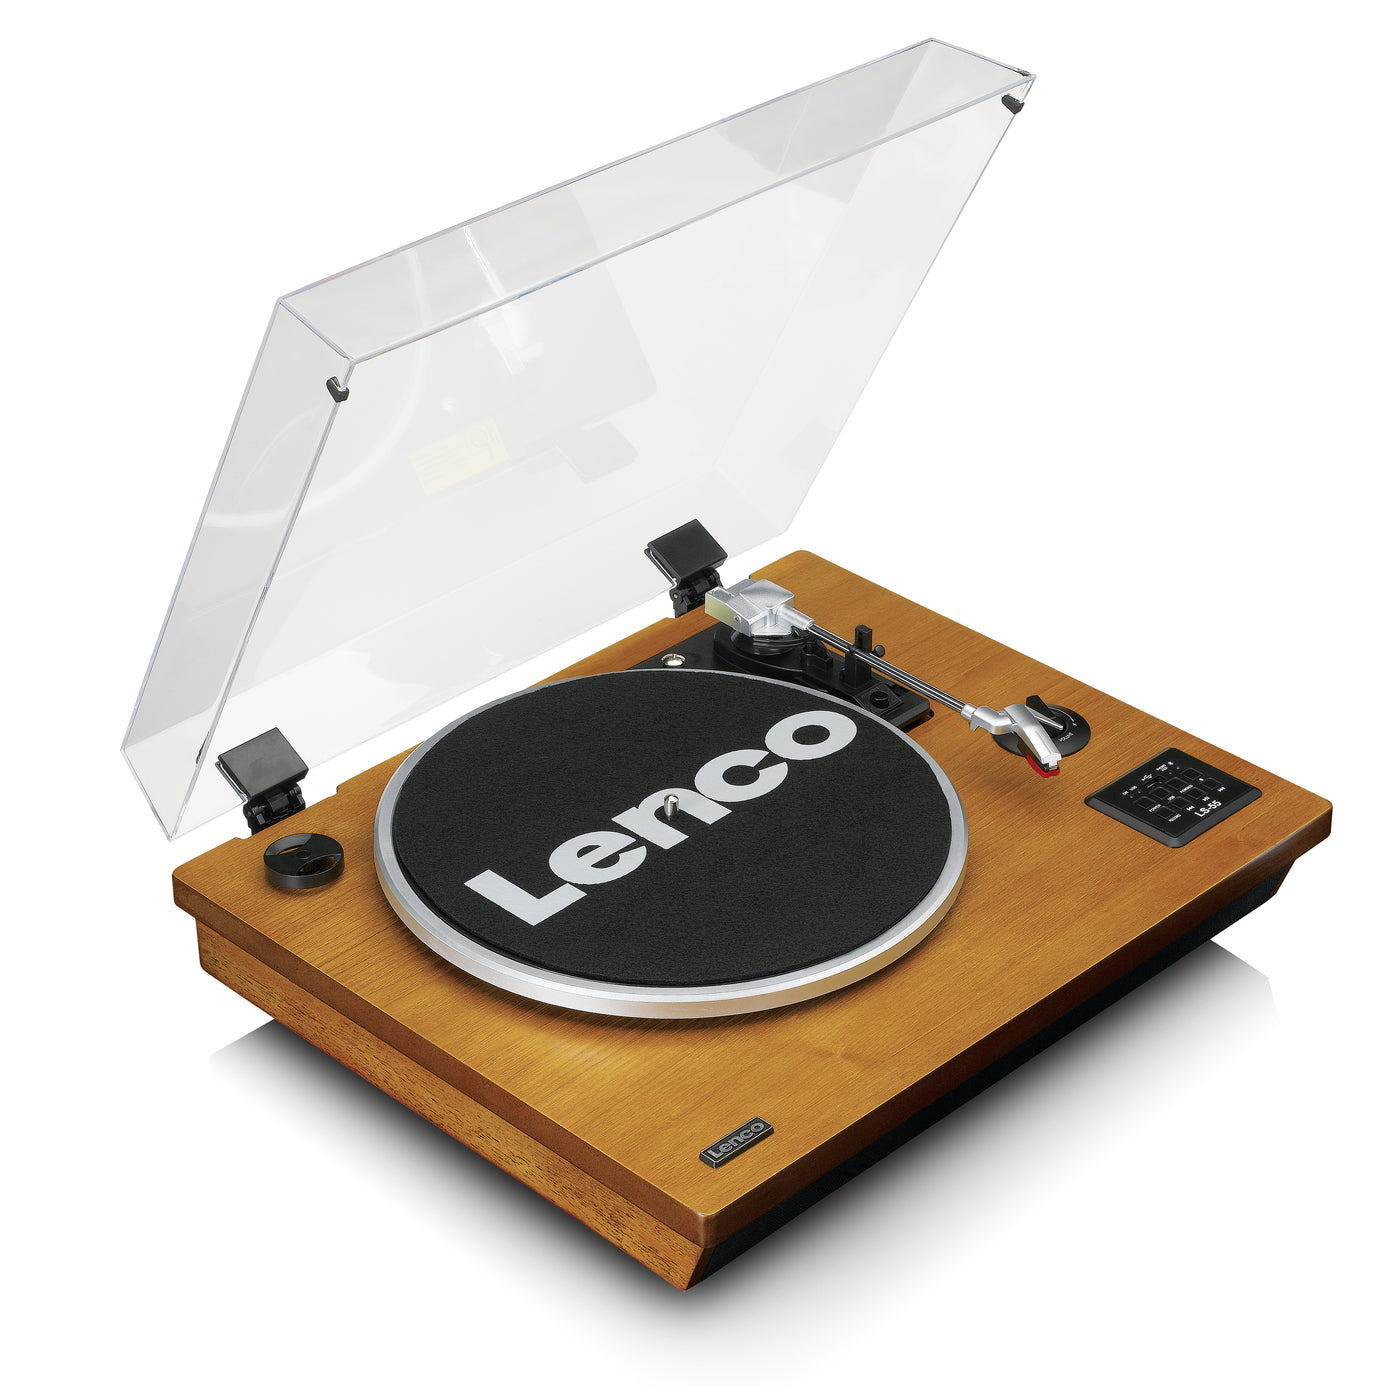 Lenco LS-55WA - Platine vinyle avec Bluetooth®, USB, MP3, haut-parleurs - Bois